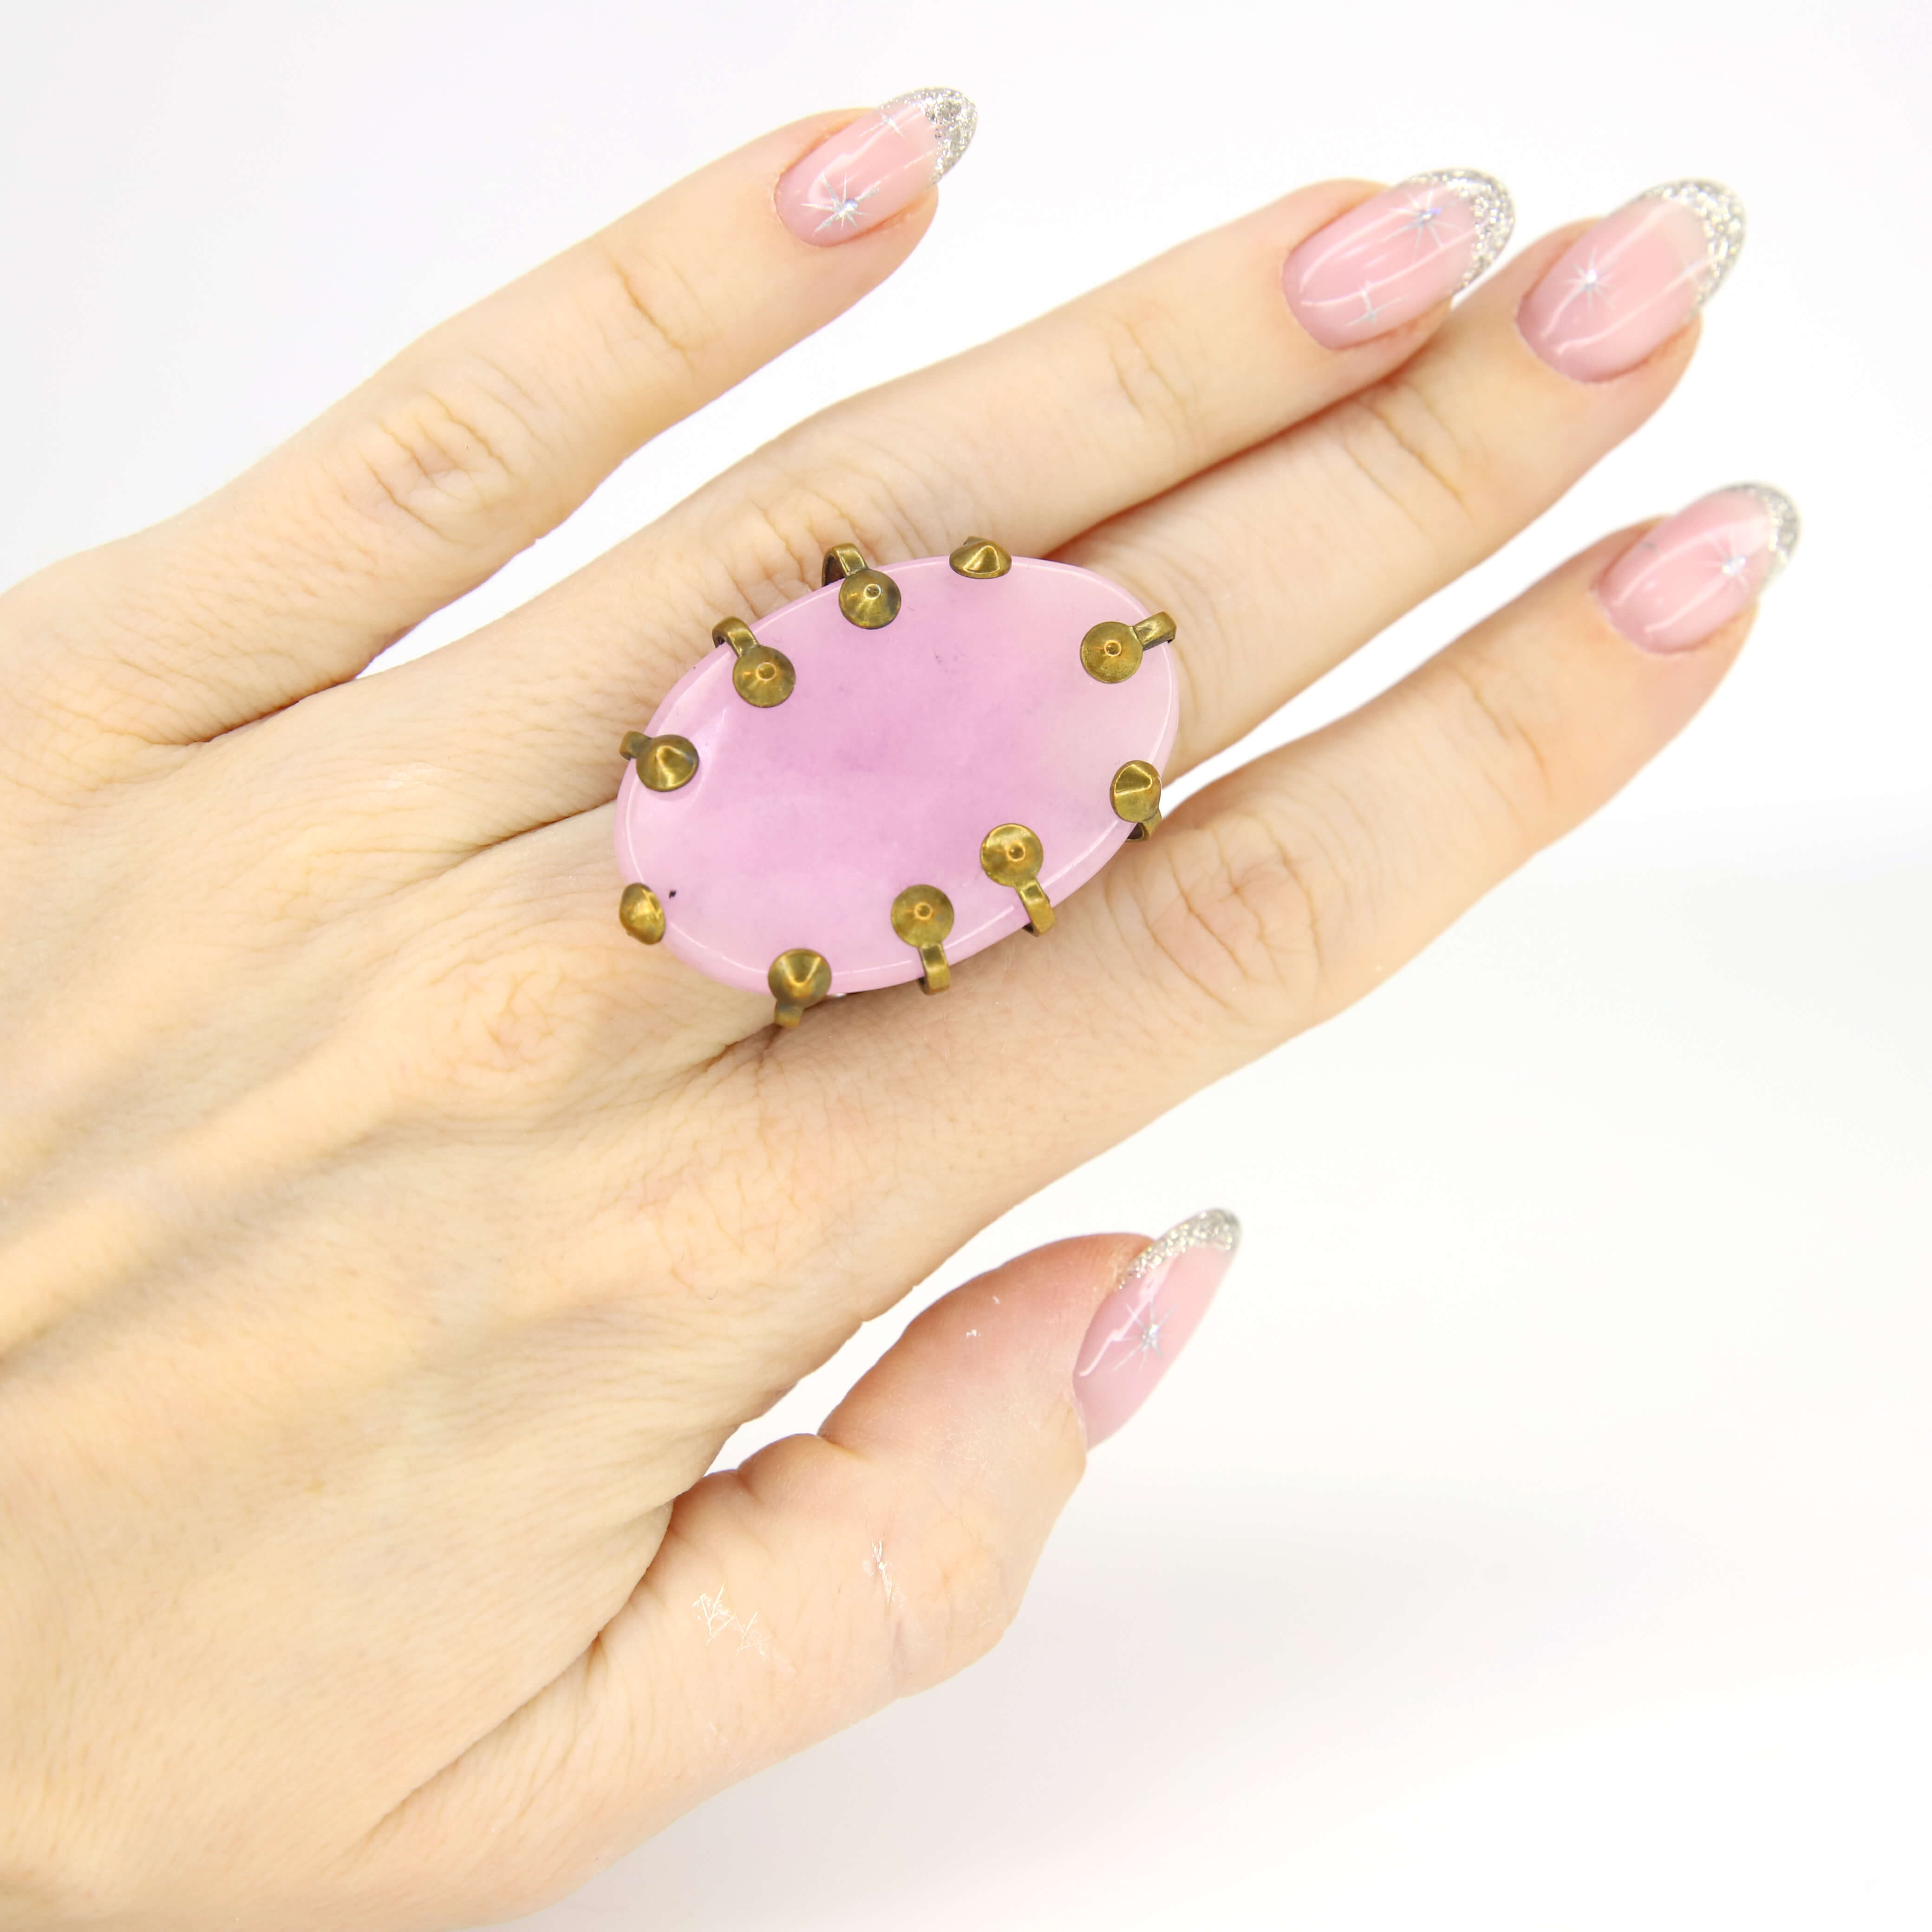 Винтажное кольцо Jan Mickaels с агатом размер 16.5-18, цвет Розовый, фото 1